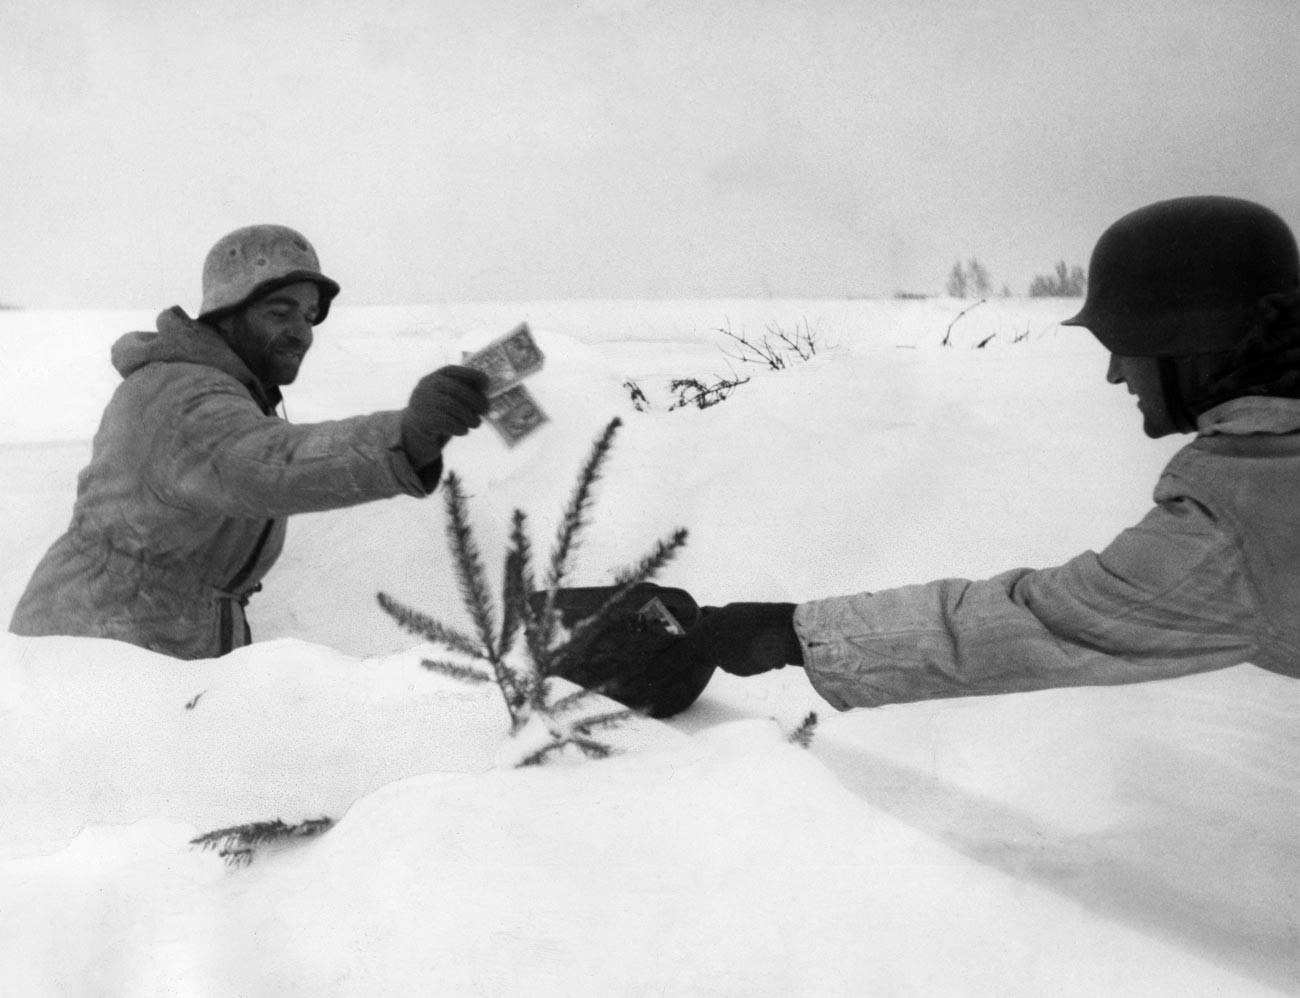 Дански војници во Курландија, февруари 1945 година.
